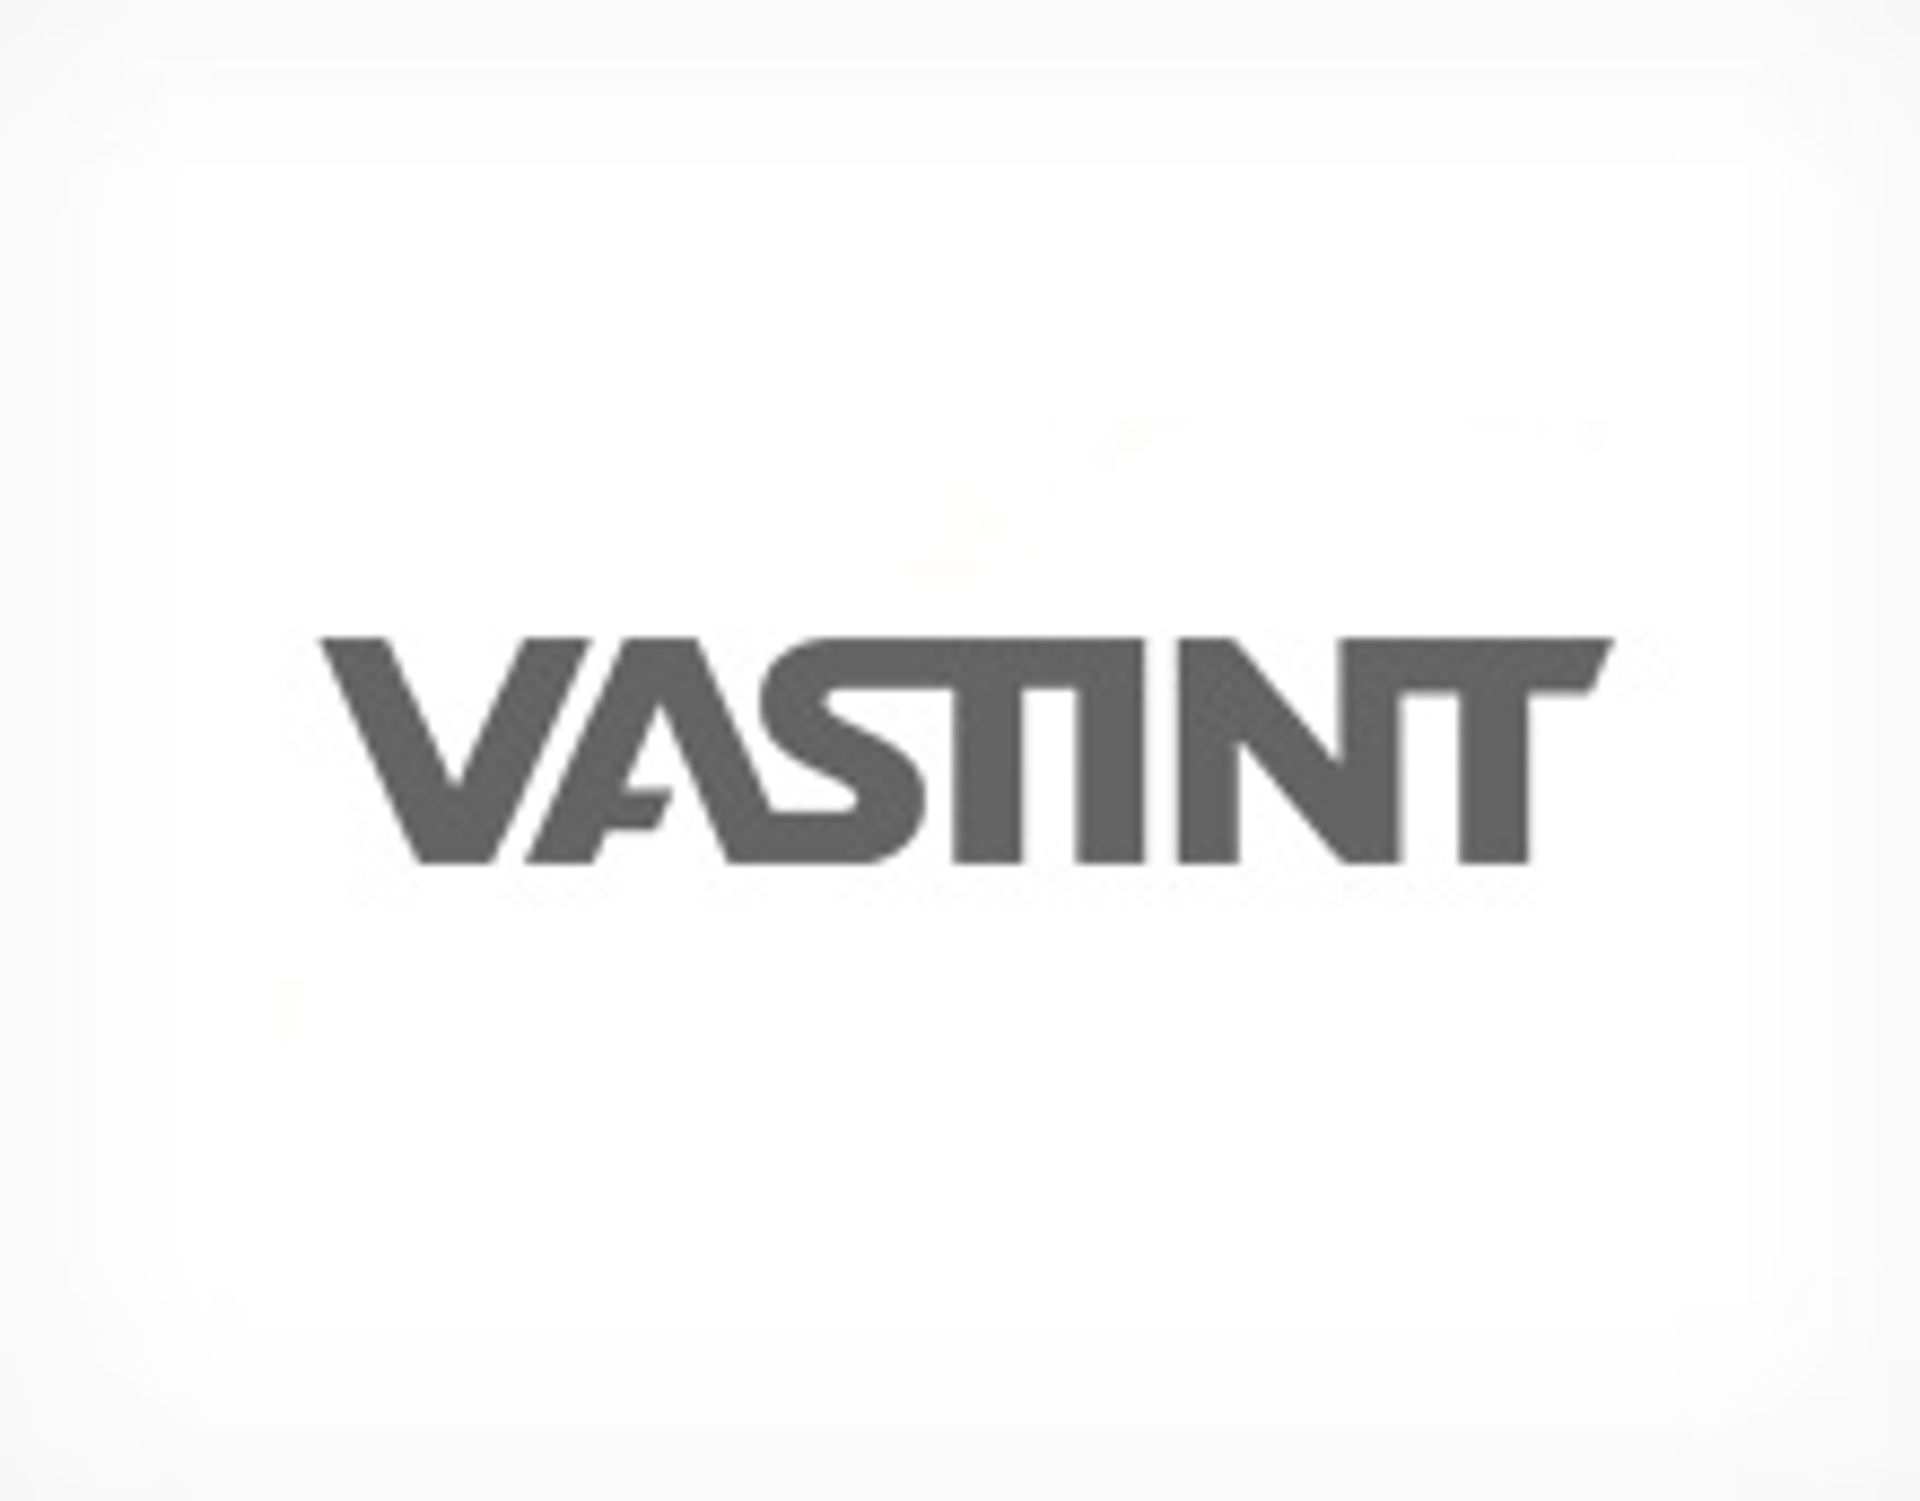  Vastint kupuje tereny inwestycyjne w Polsce